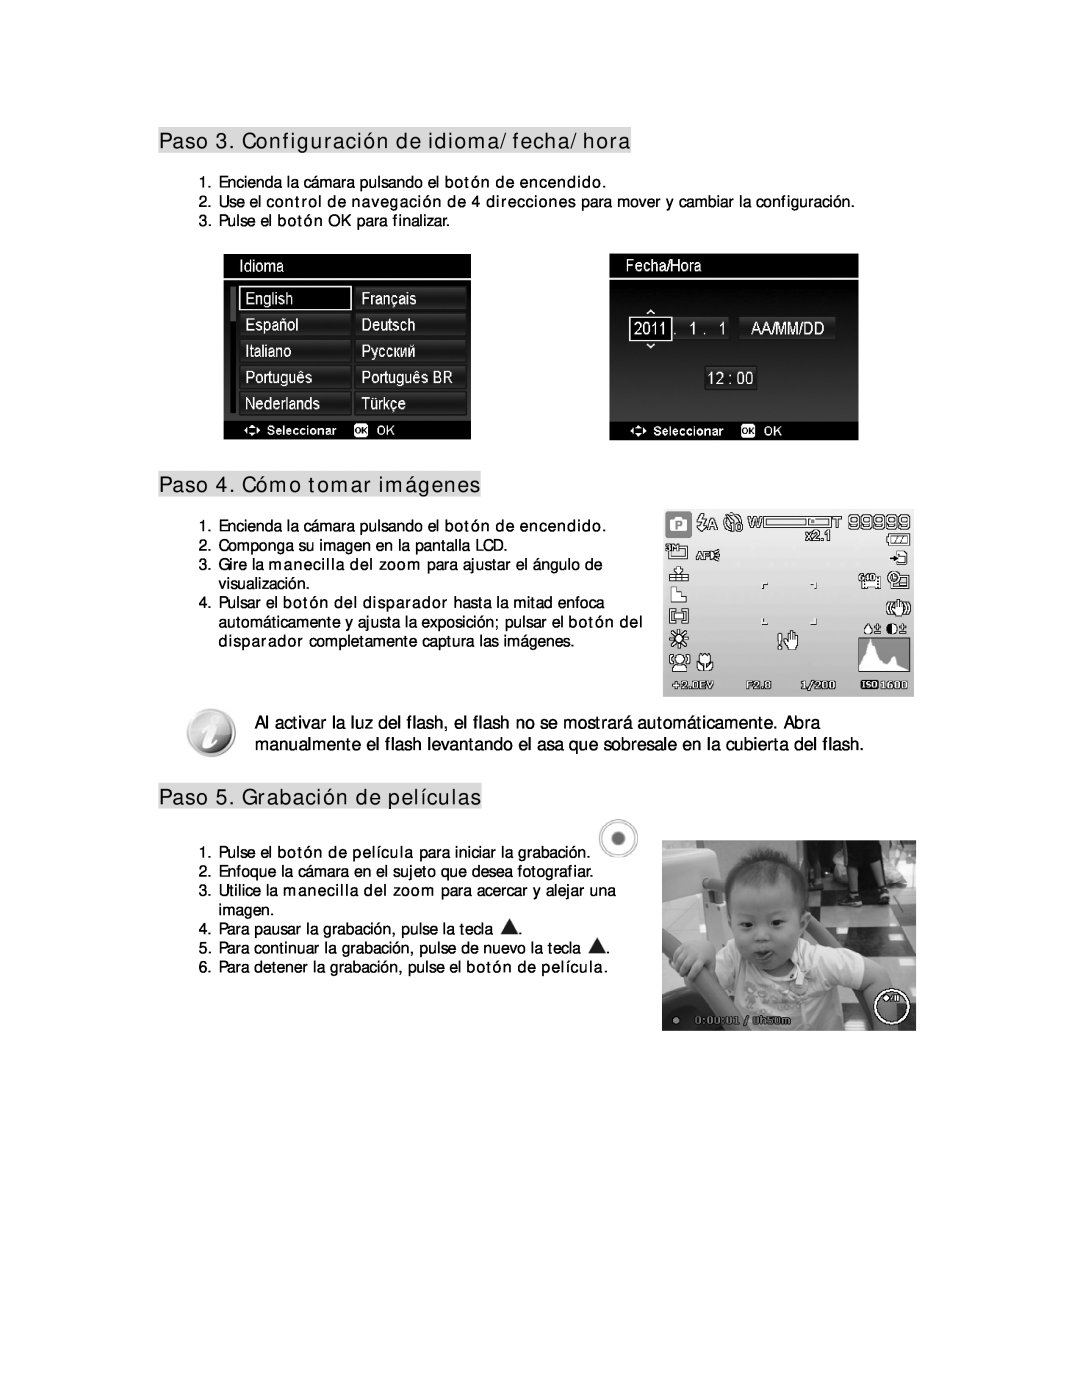 HP D-3000 manual Paso 3. Configuración de idioma/fecha/hora, Paso 4. Cómo tomar imágenes, Paso 5. Grabación de películas 